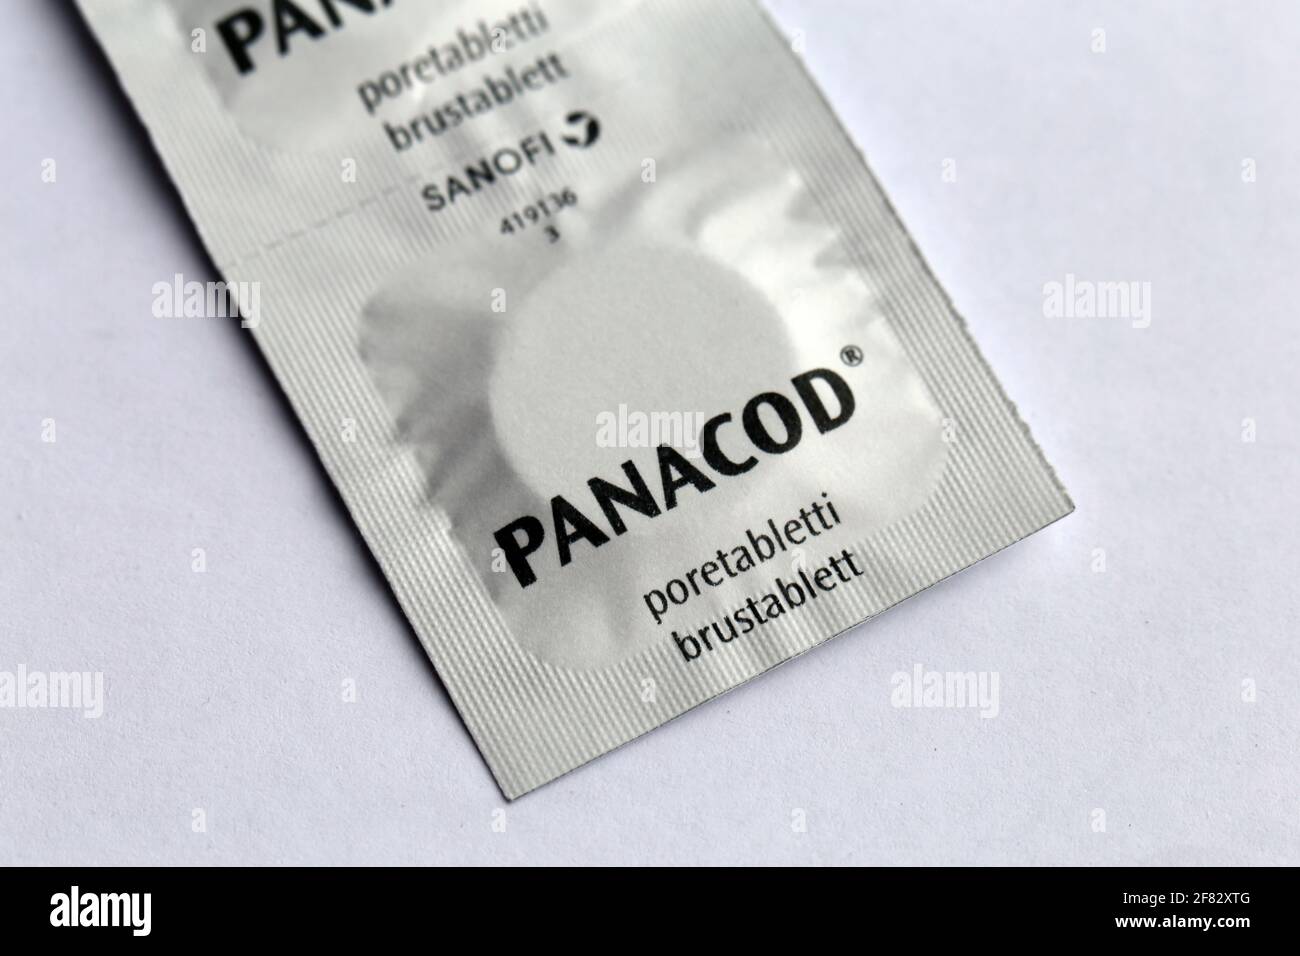 Panacod Brausetabletten. Verschreibungspflichtiges Schmerzmittel. Dieses schmerzstillende Medikament macht süchtig und kann missbraucht werden. Paracetamol und Codein. Stockfoto